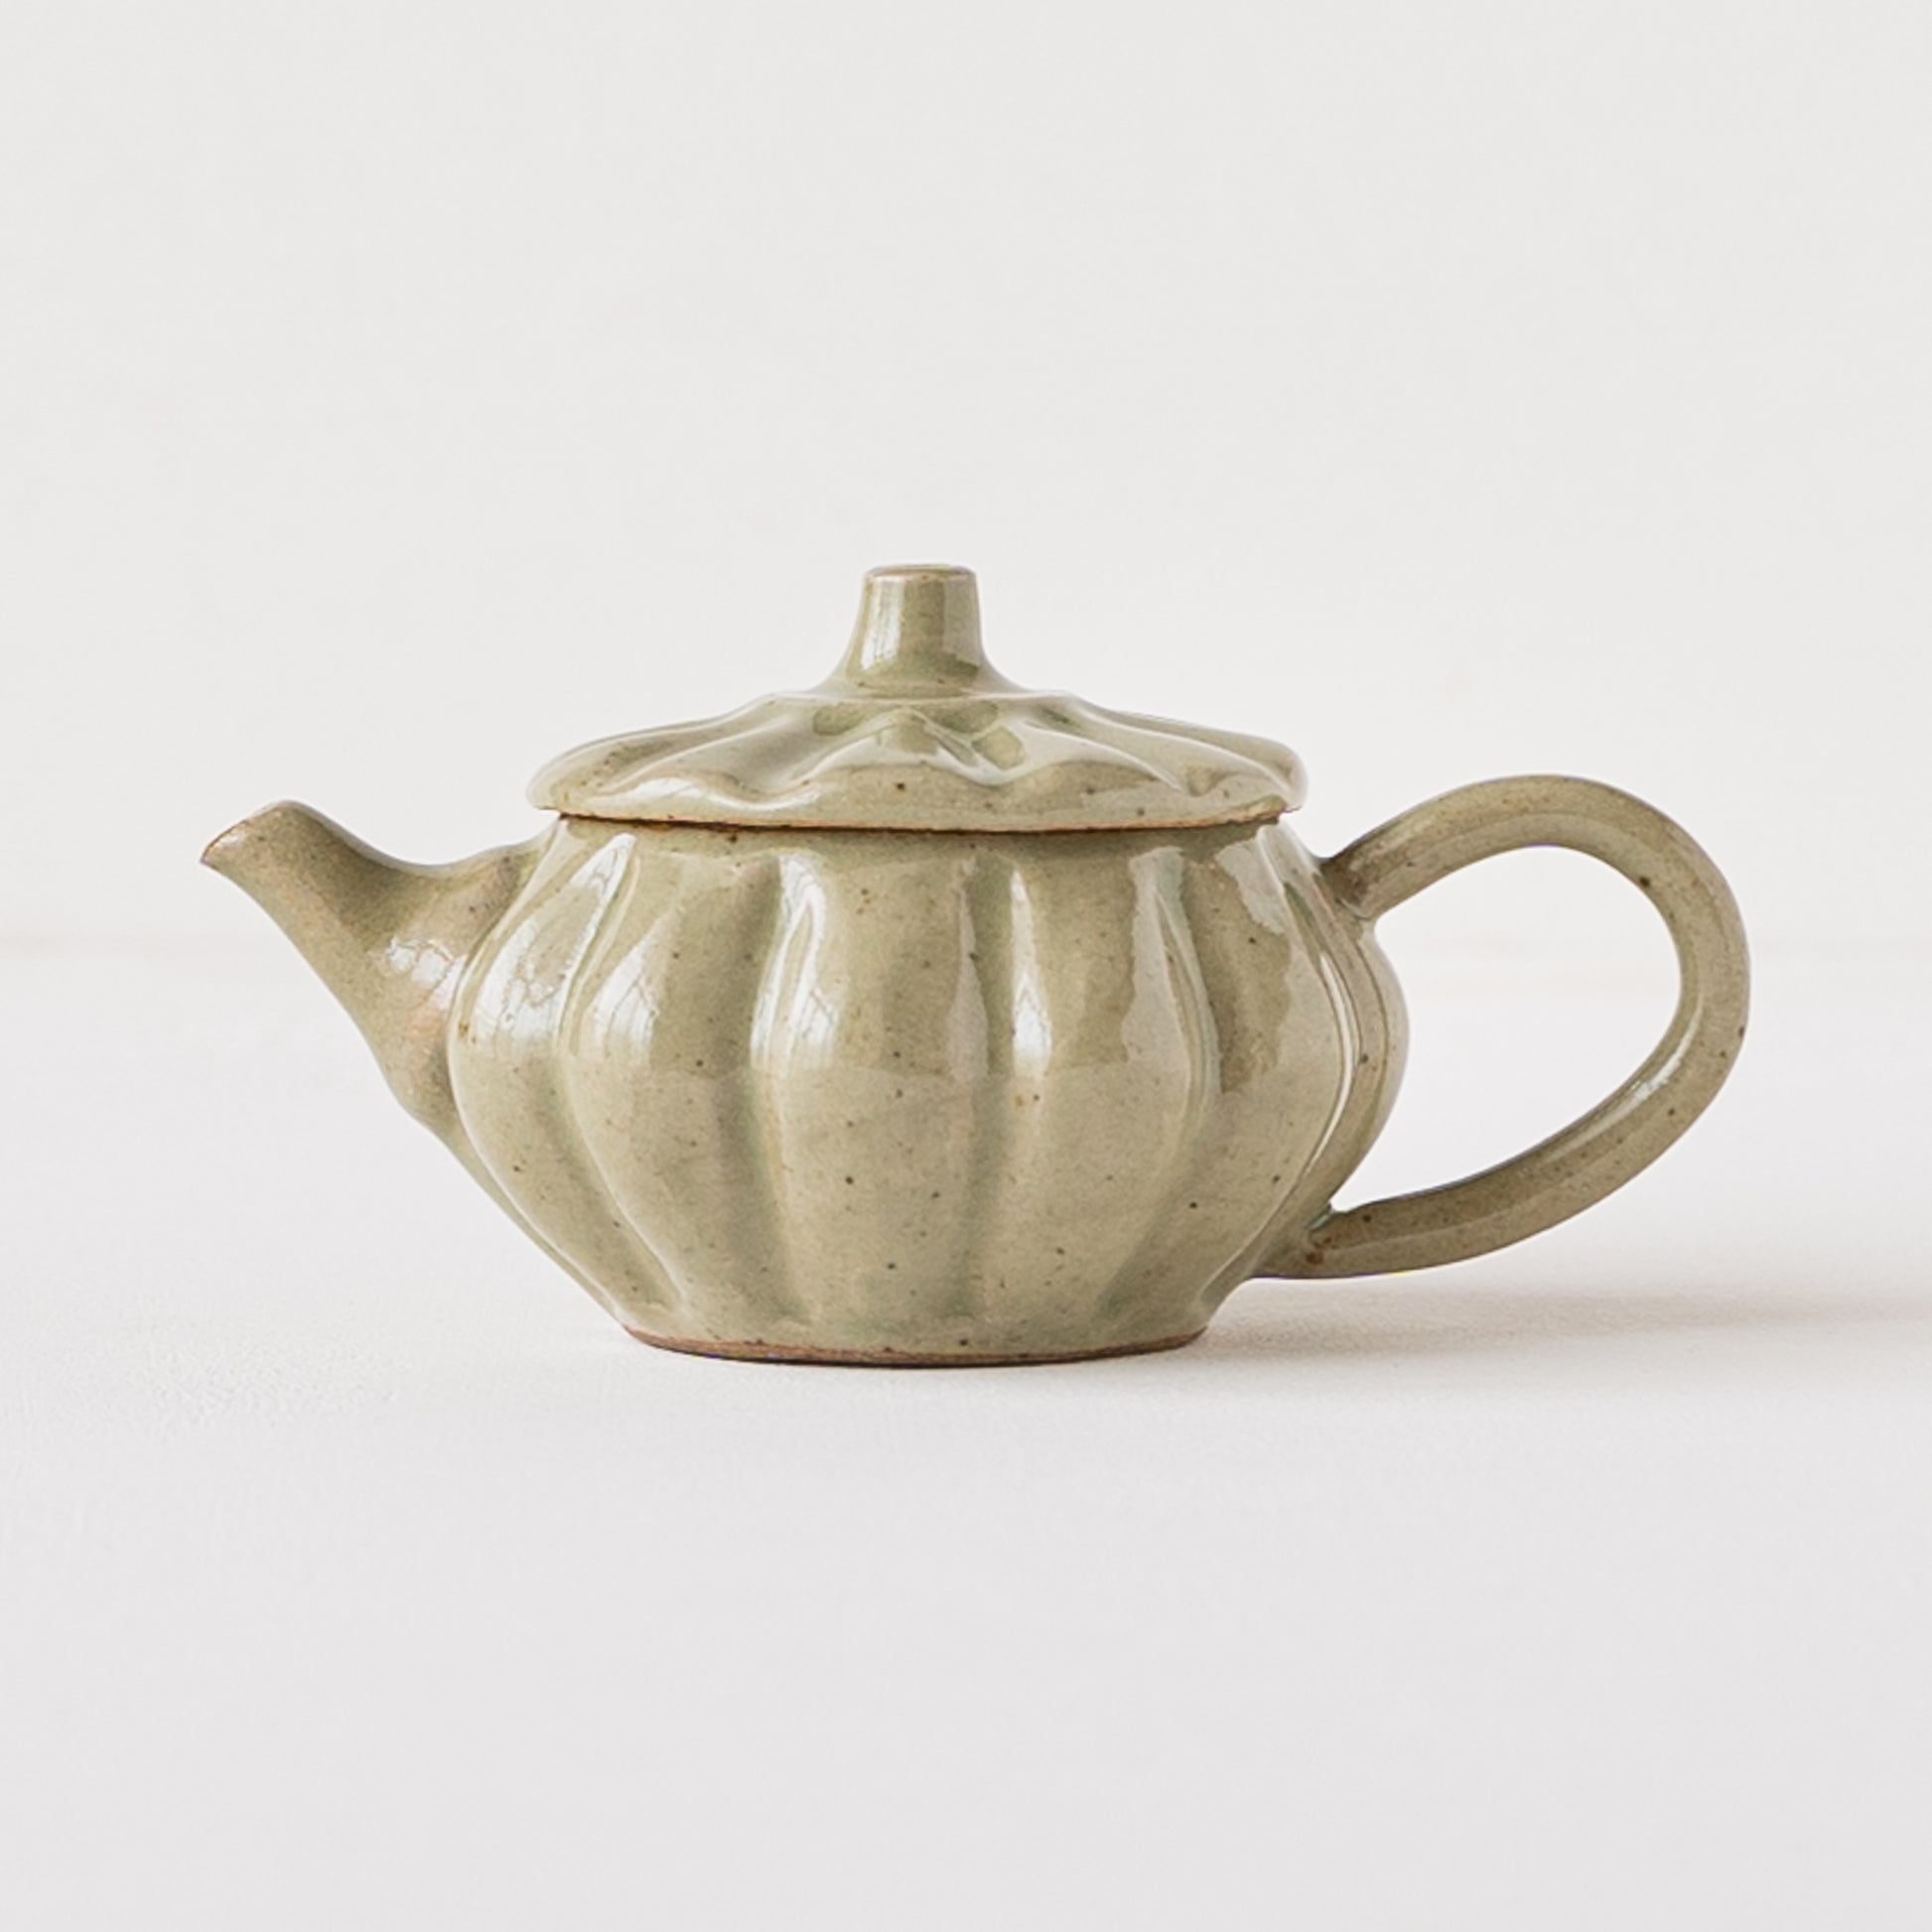 並白釉の色合いが落ち着いていて素敵な笠原良子さんの茶壺